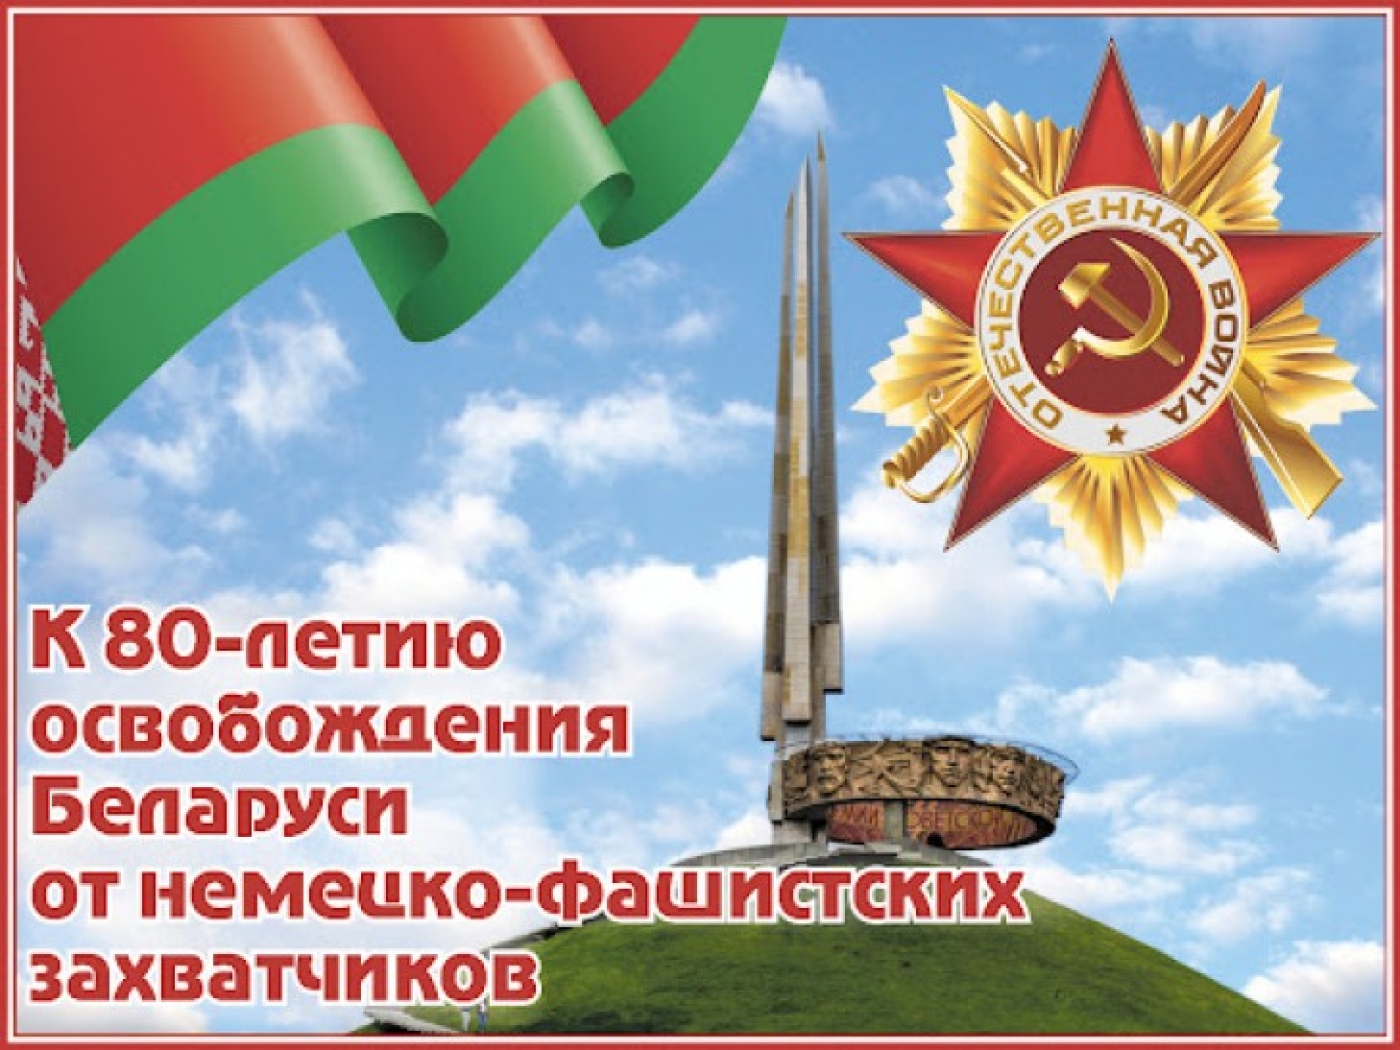 В Беларуси установлена юбилейная медаль к 80-летию освобождения страны от немецко-фашистских захватчиков